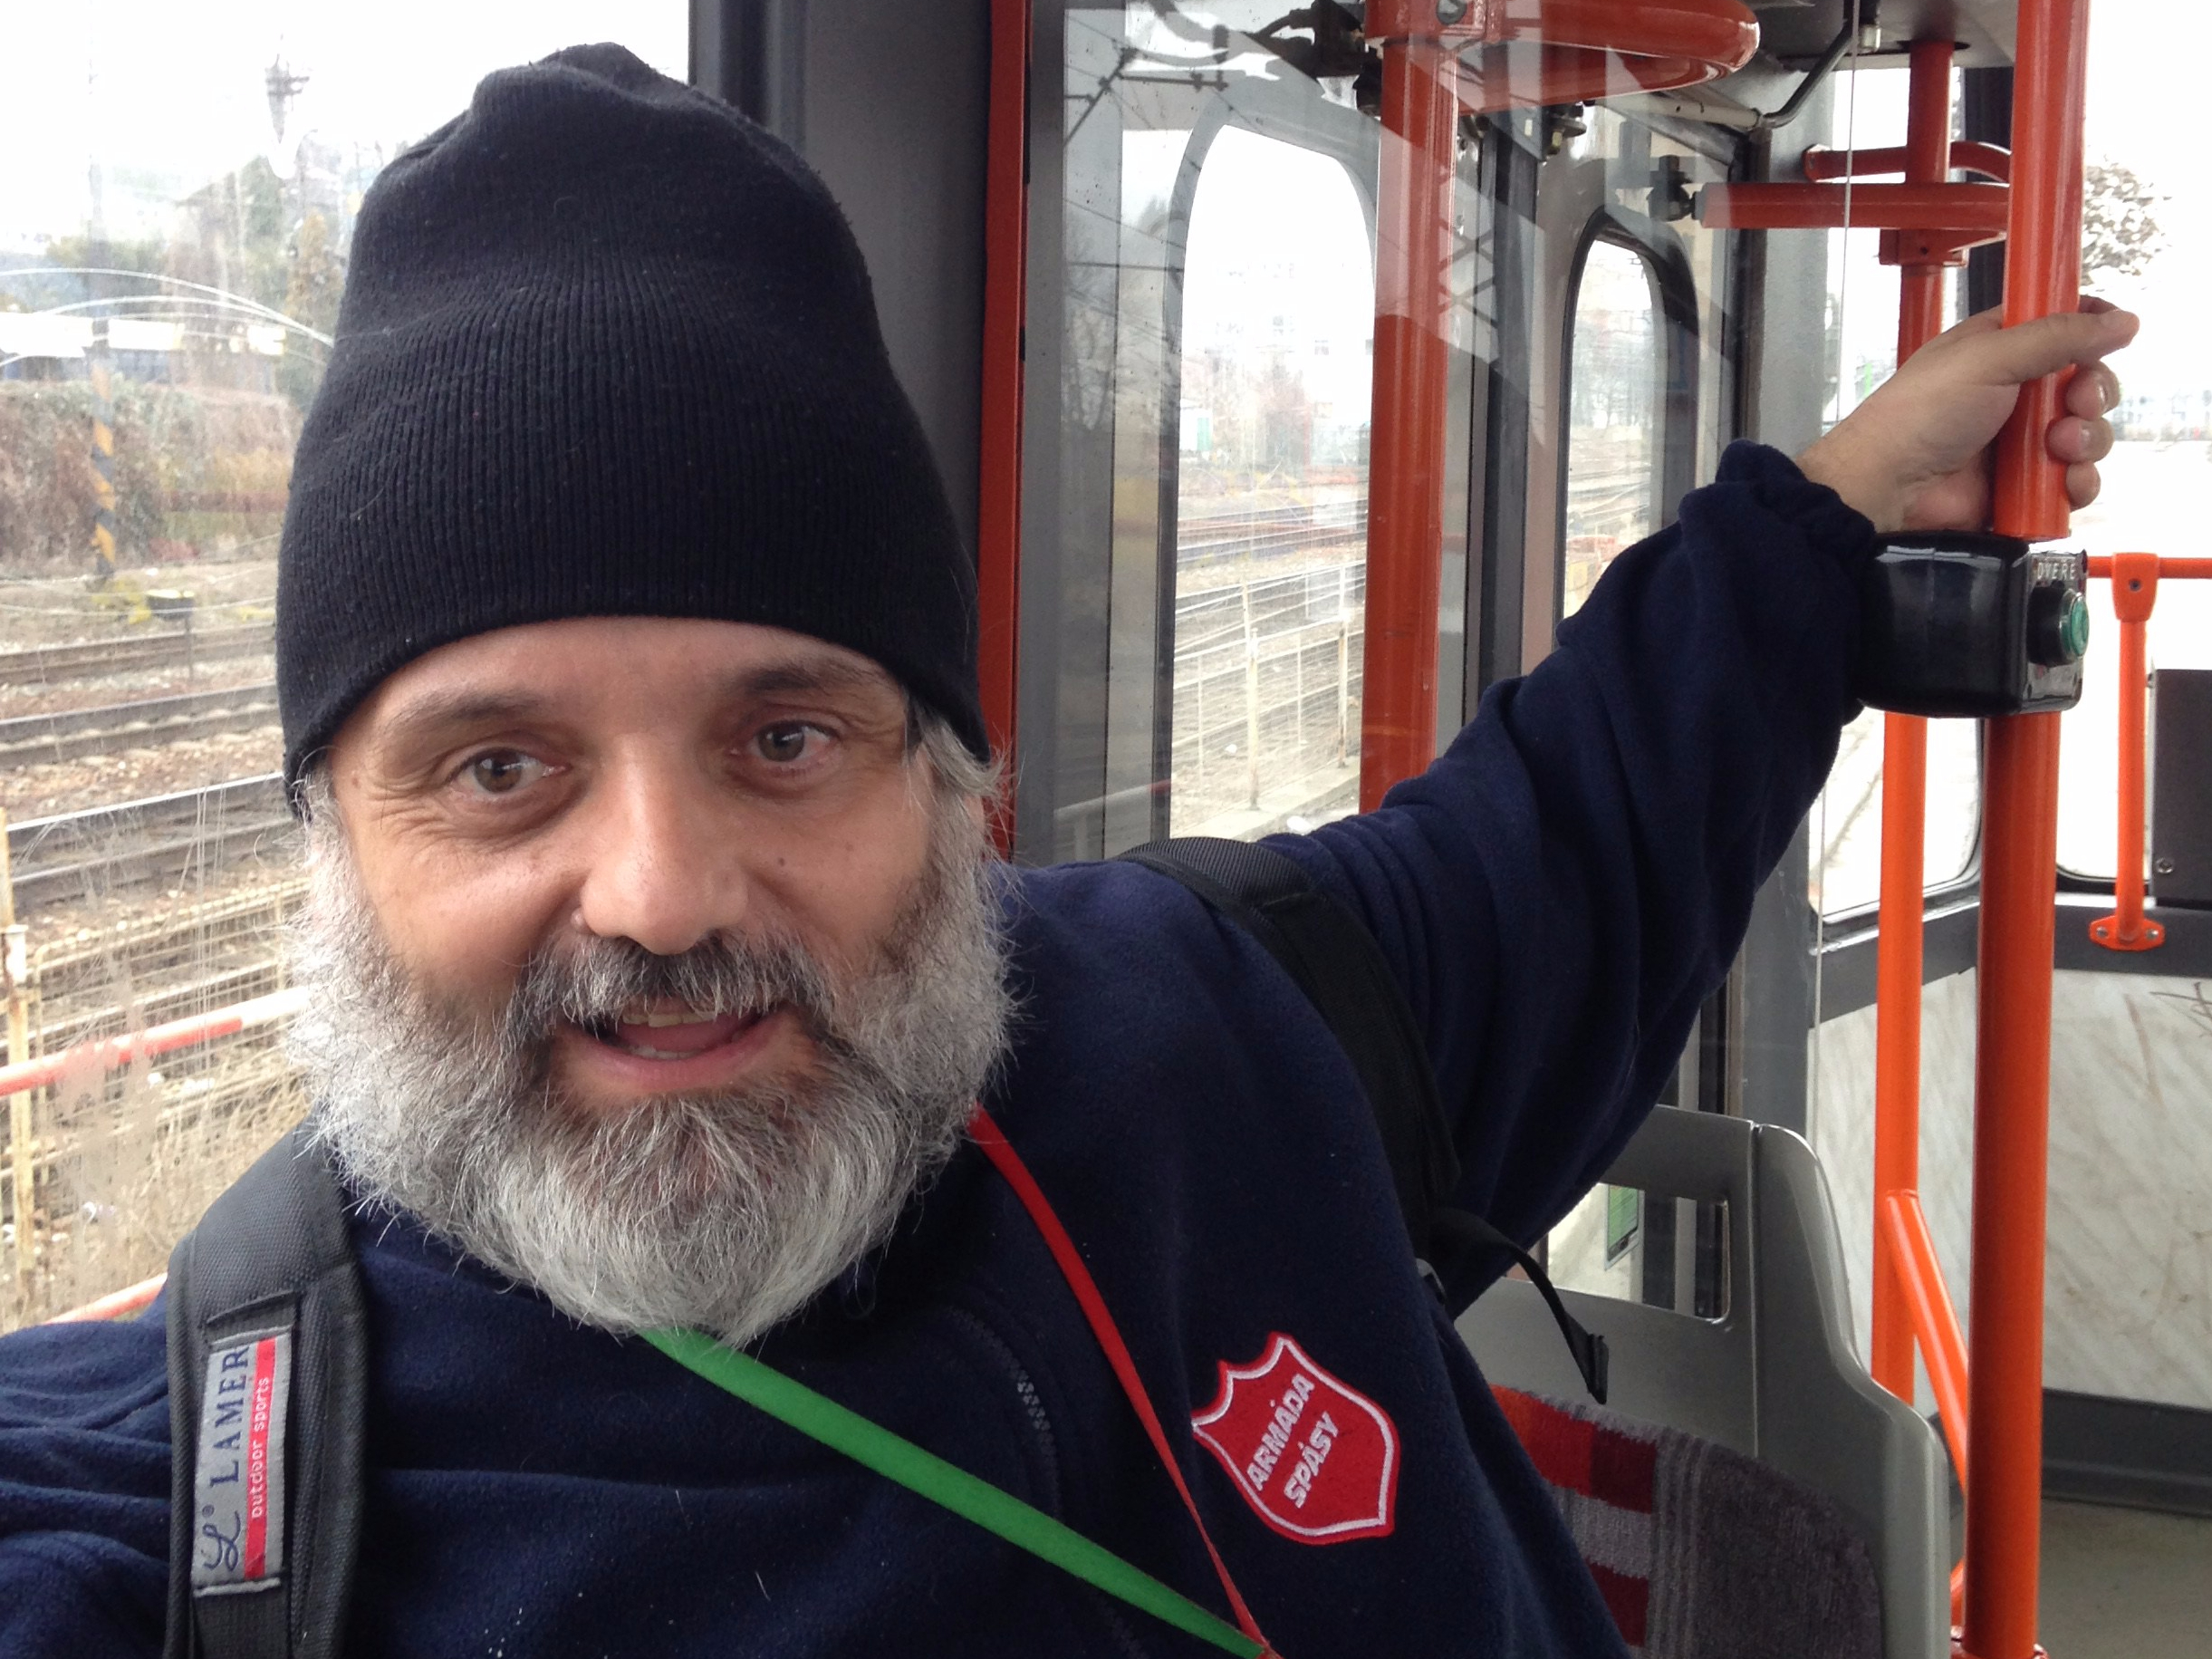 Pragulic guide Robert Pochop rides the tram in Prague.